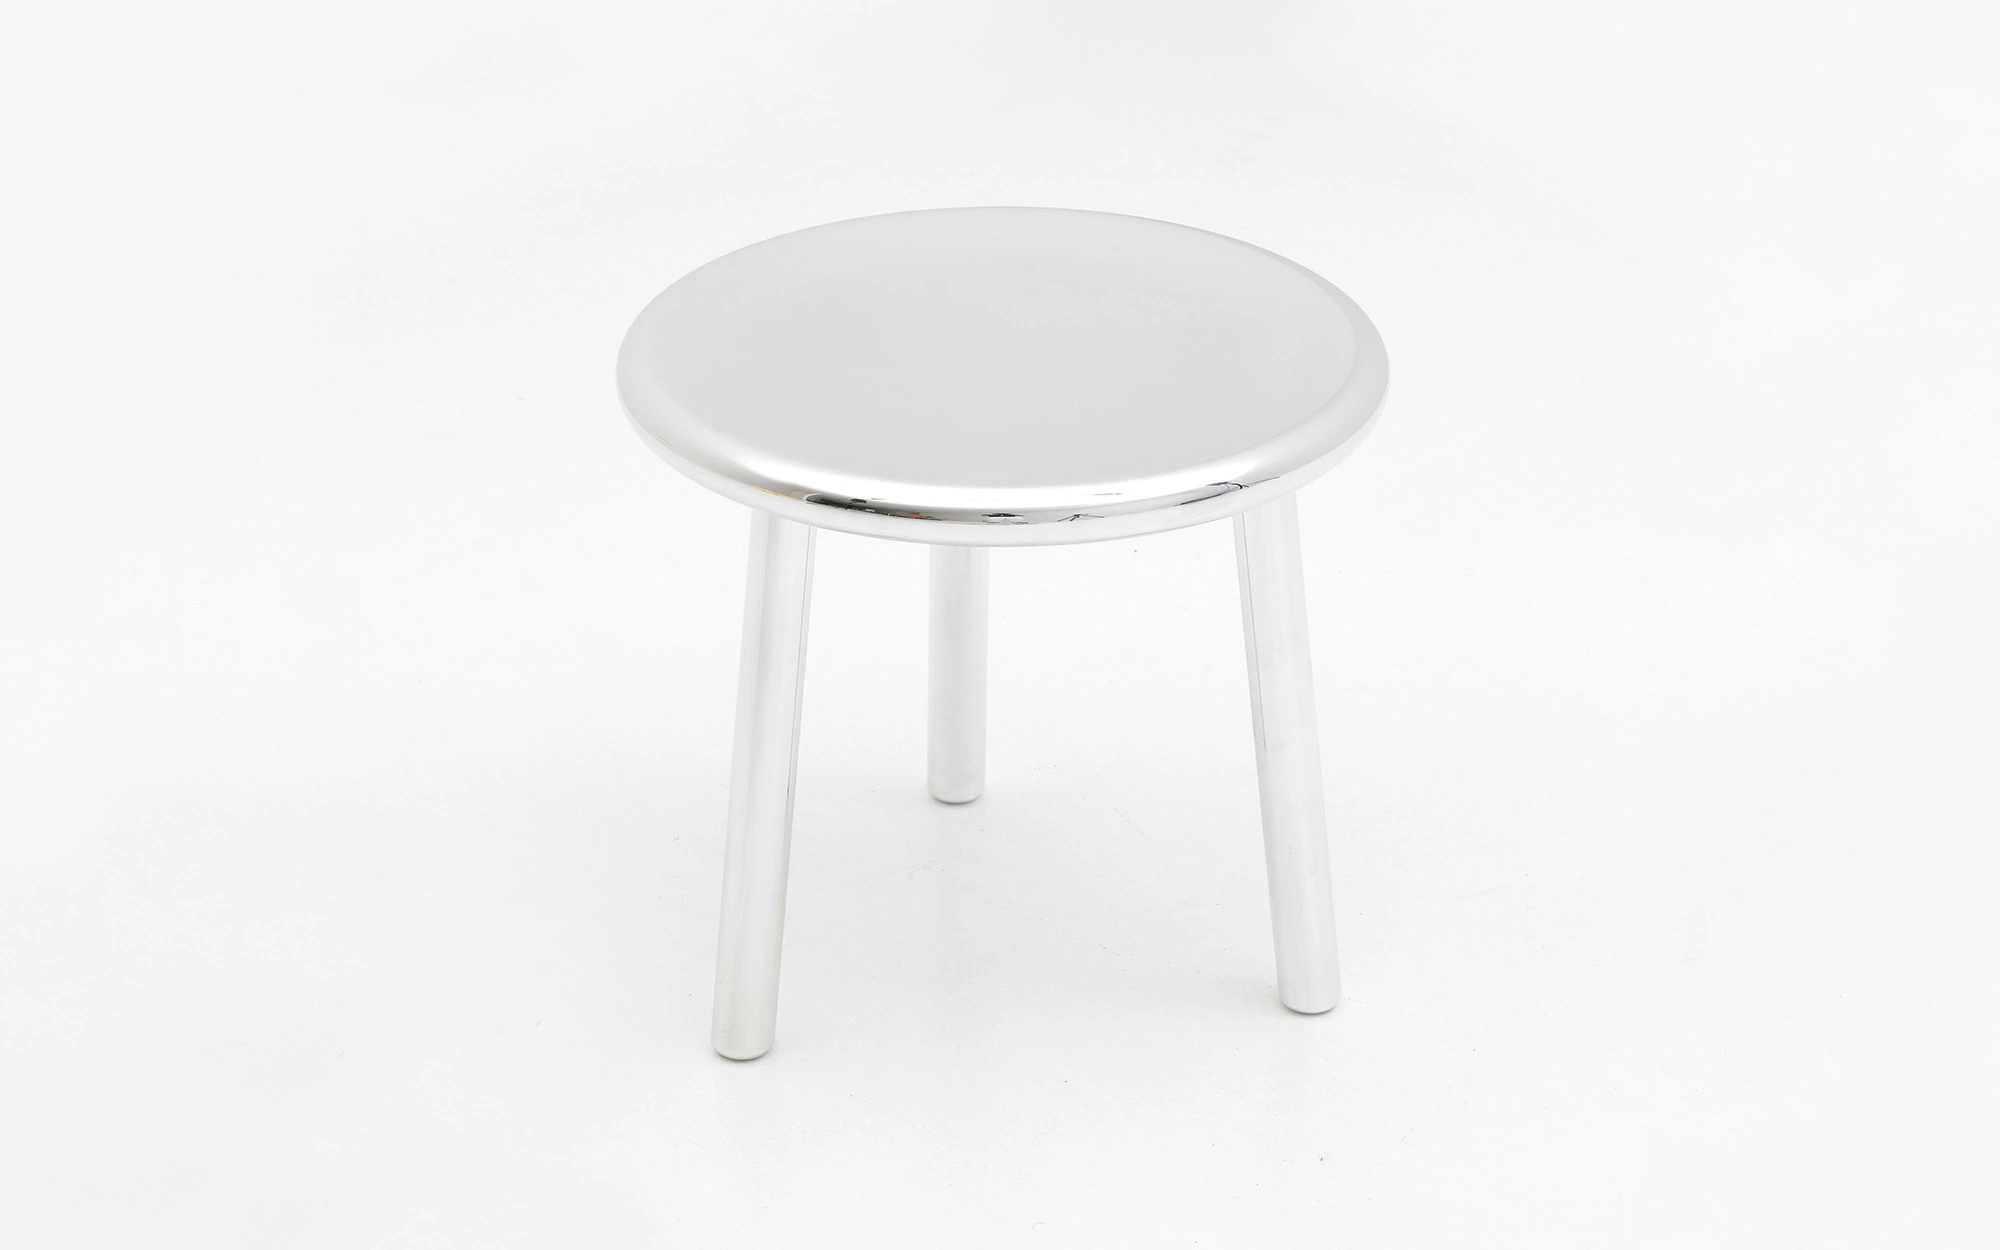 3-legged stool - Jasper Morrison - Object - Galerie kreo